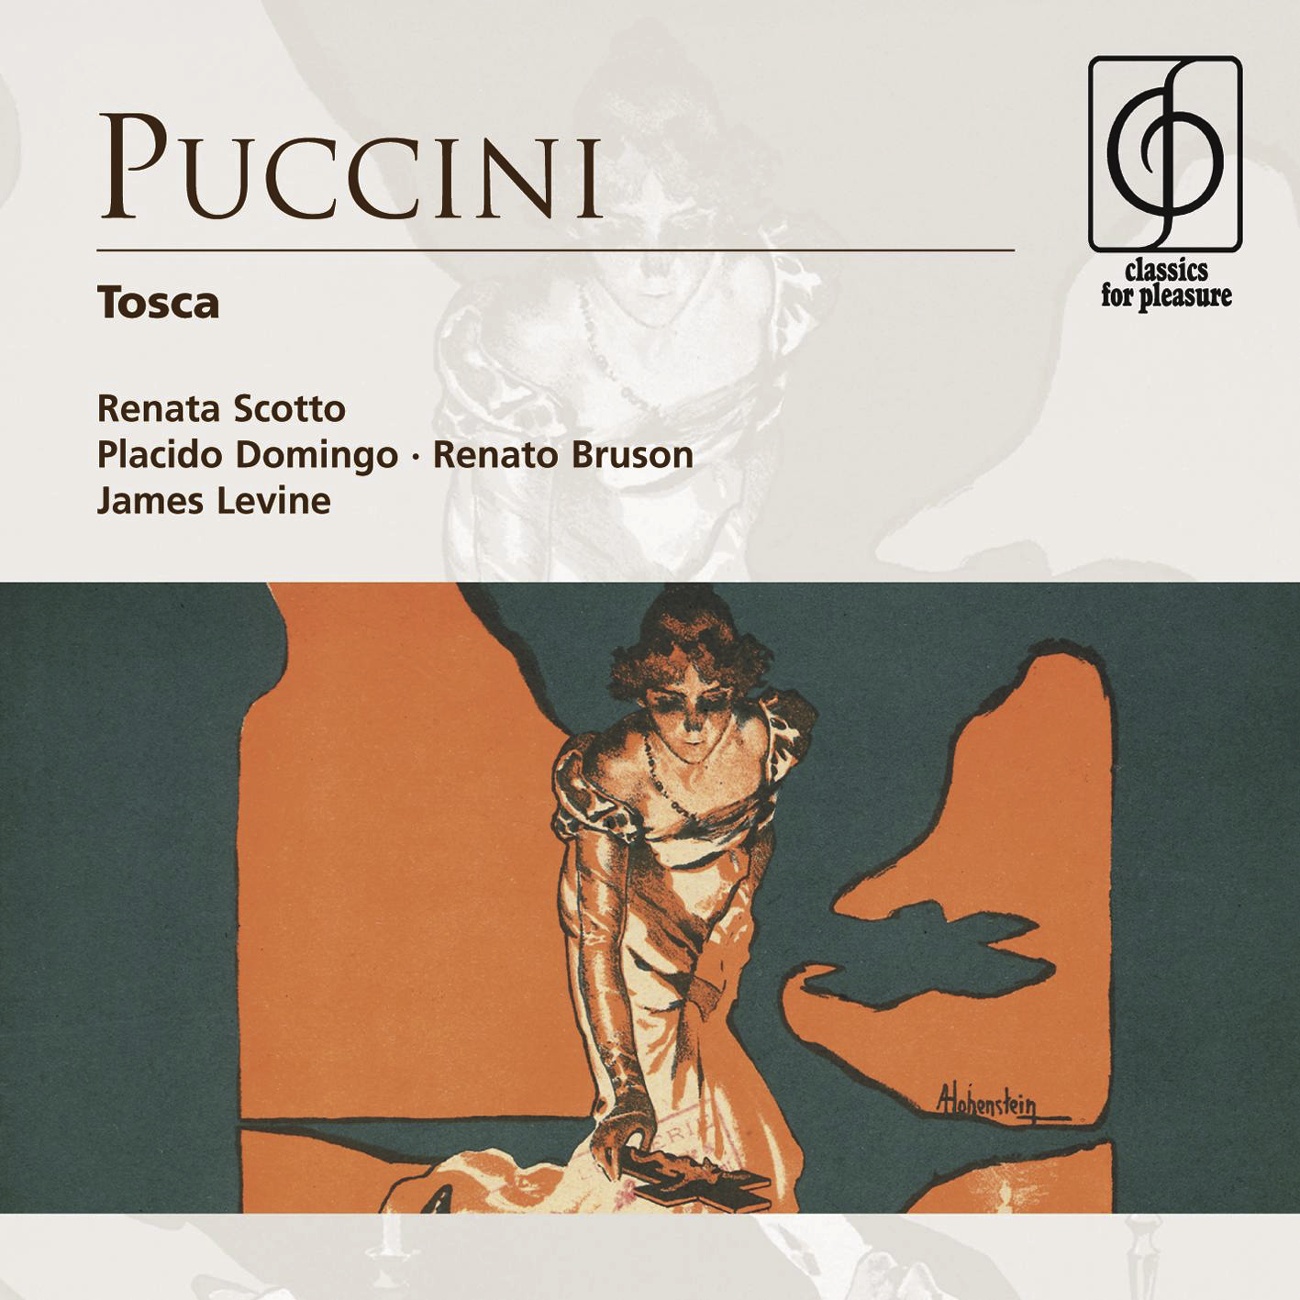 Tosca - Opera in three acts (1997 Digital Remaster), Act II: Ed or fra noi parliam...Sciarrone, che dice il Cavalier? (Scarpia, Tosca, Sciarrone, Cavaradossi)